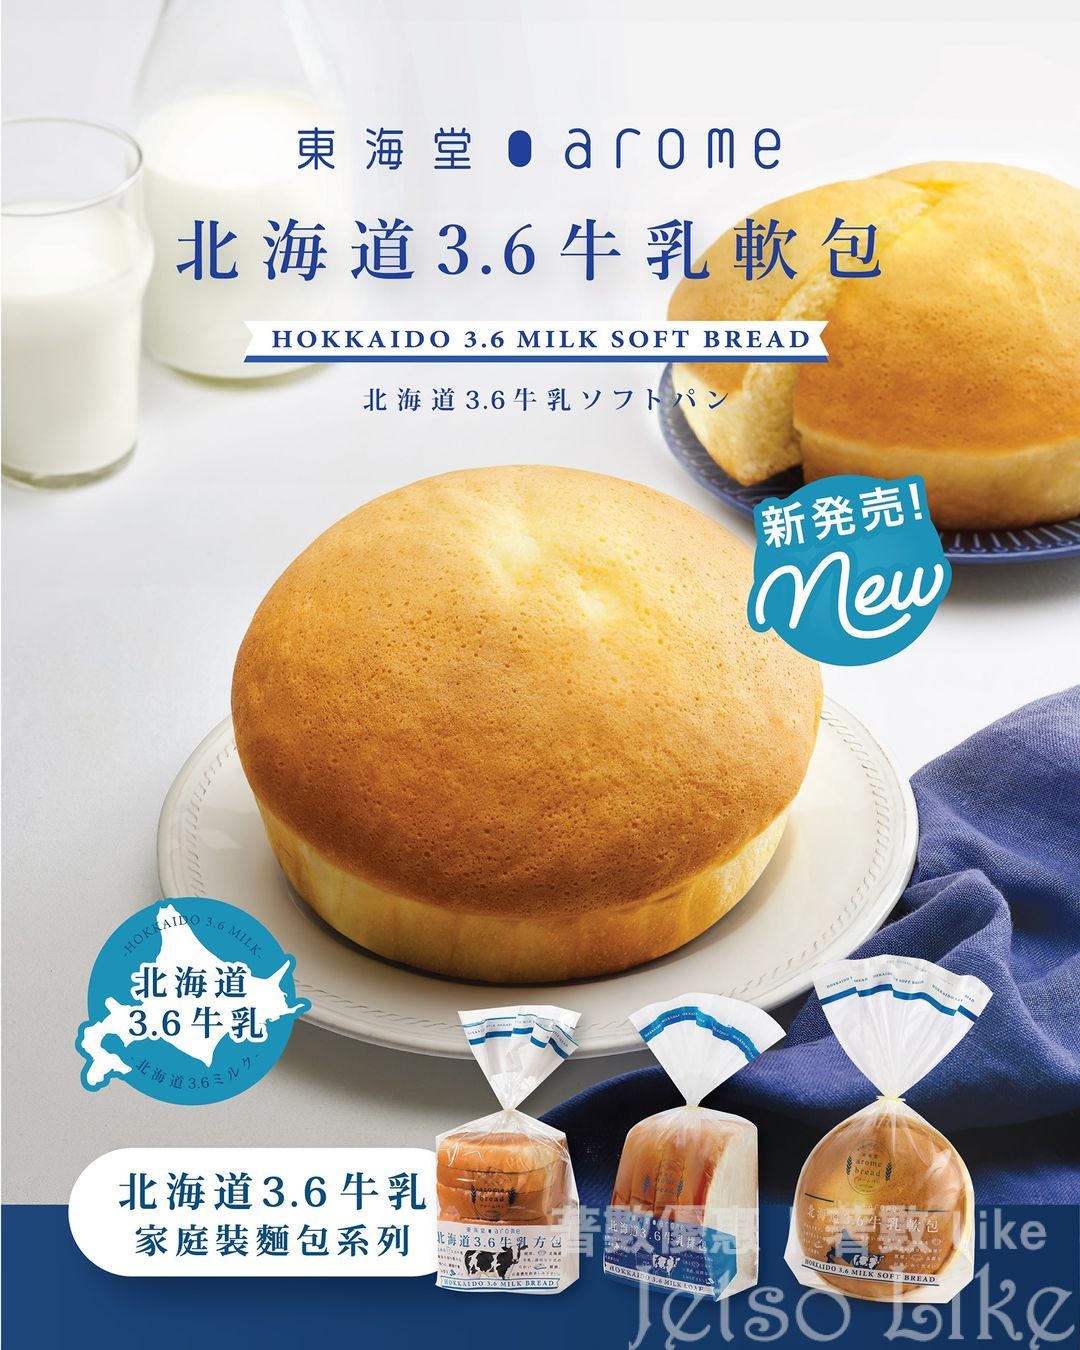 東海堂 全新推出 北海道3.6牛乳軟包